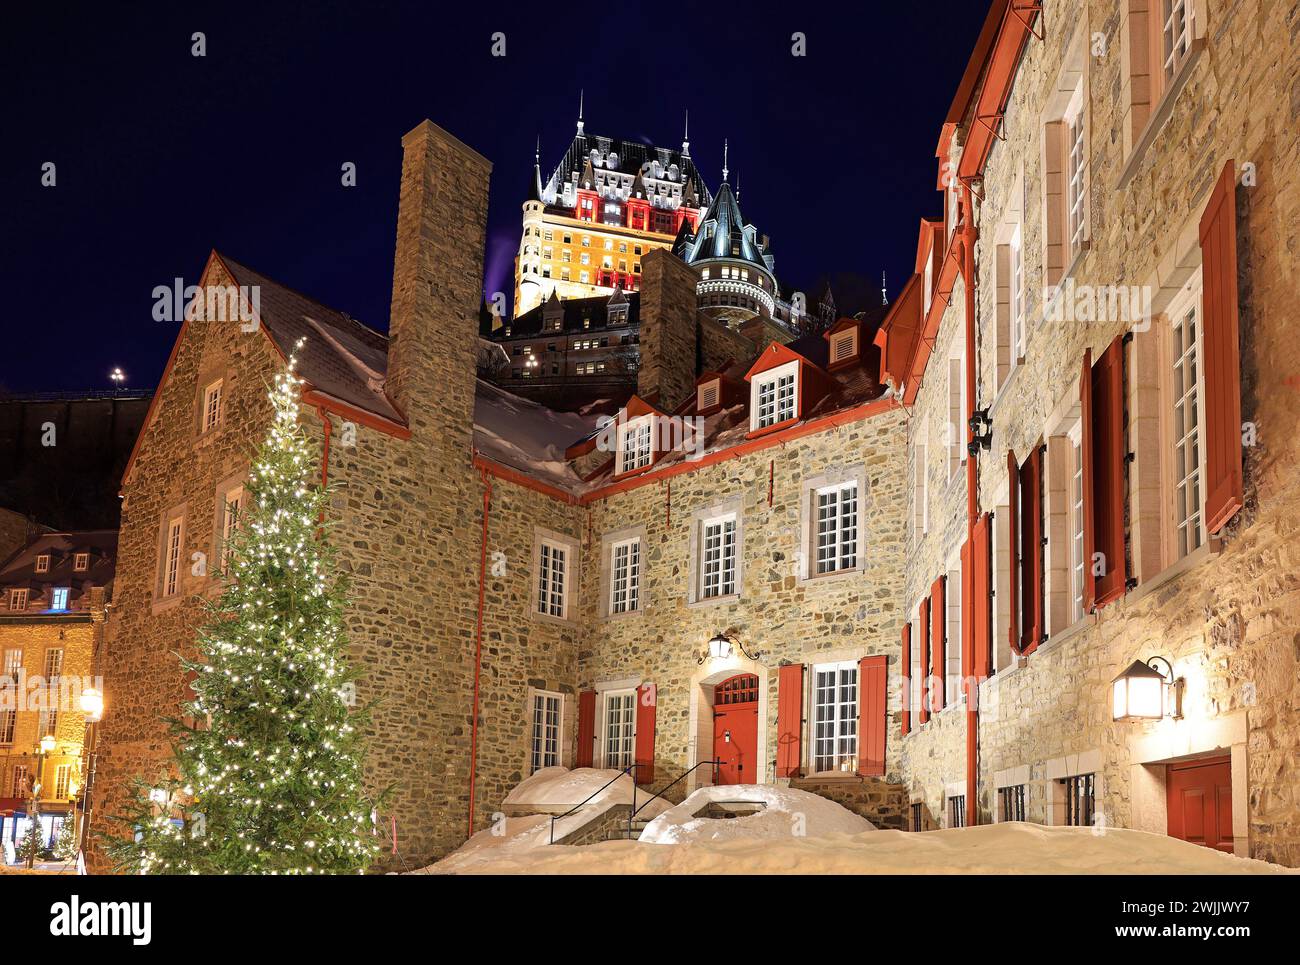 Maison Chevalier et Château Frontenac illuminé au crépuscule en hiver, ville de Québec Banque D'Images